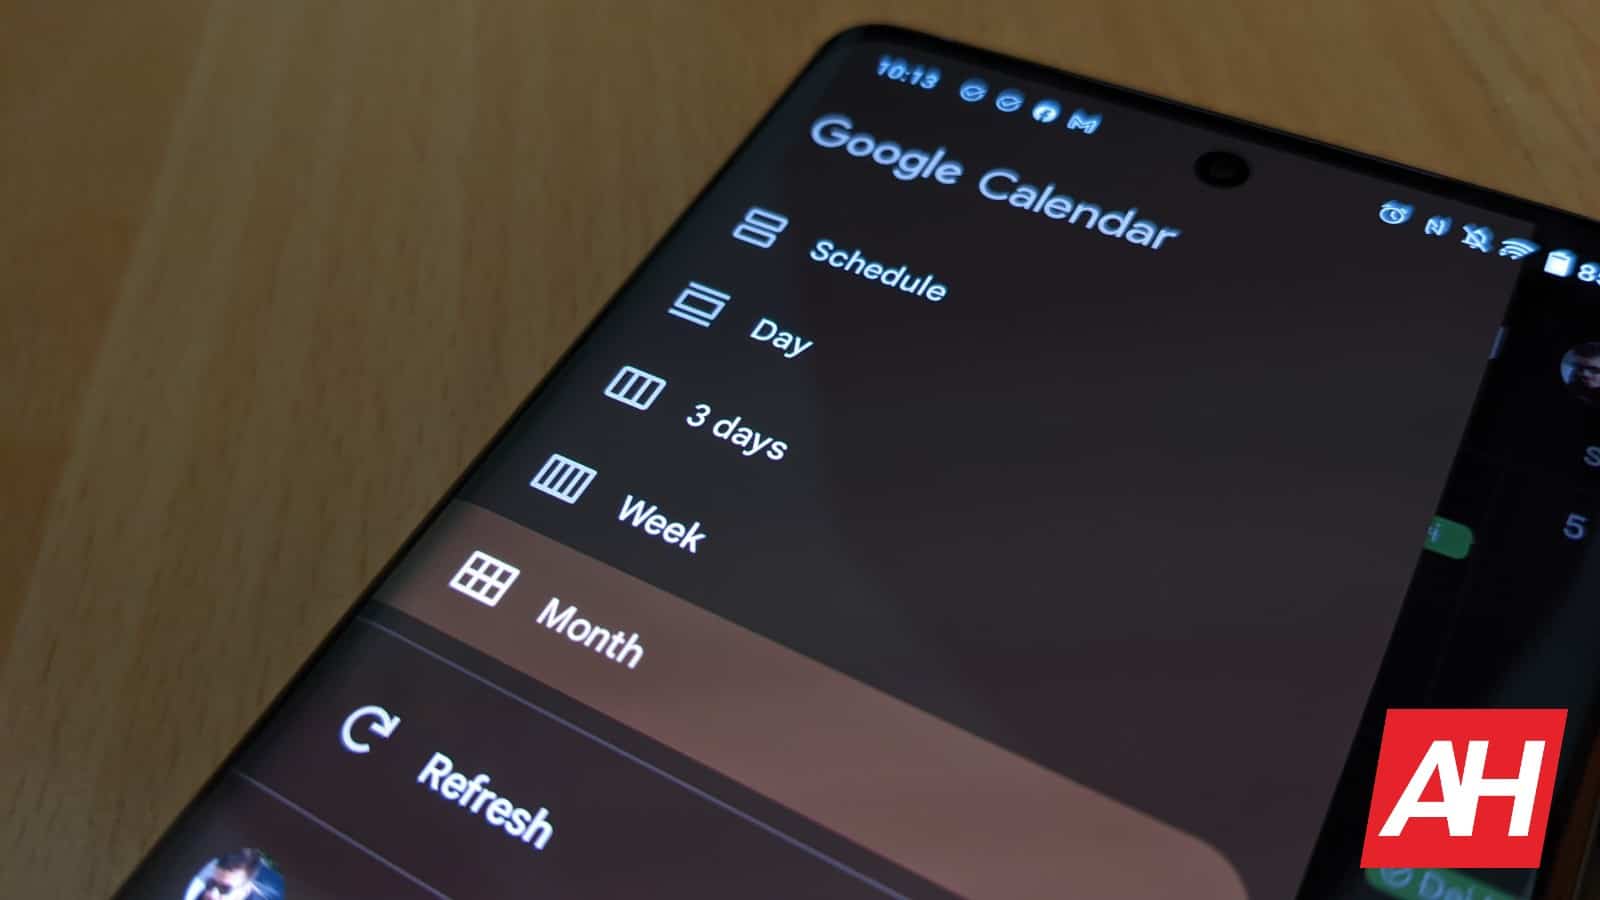 Google Calendar simplifica la creación de tareas y eventos